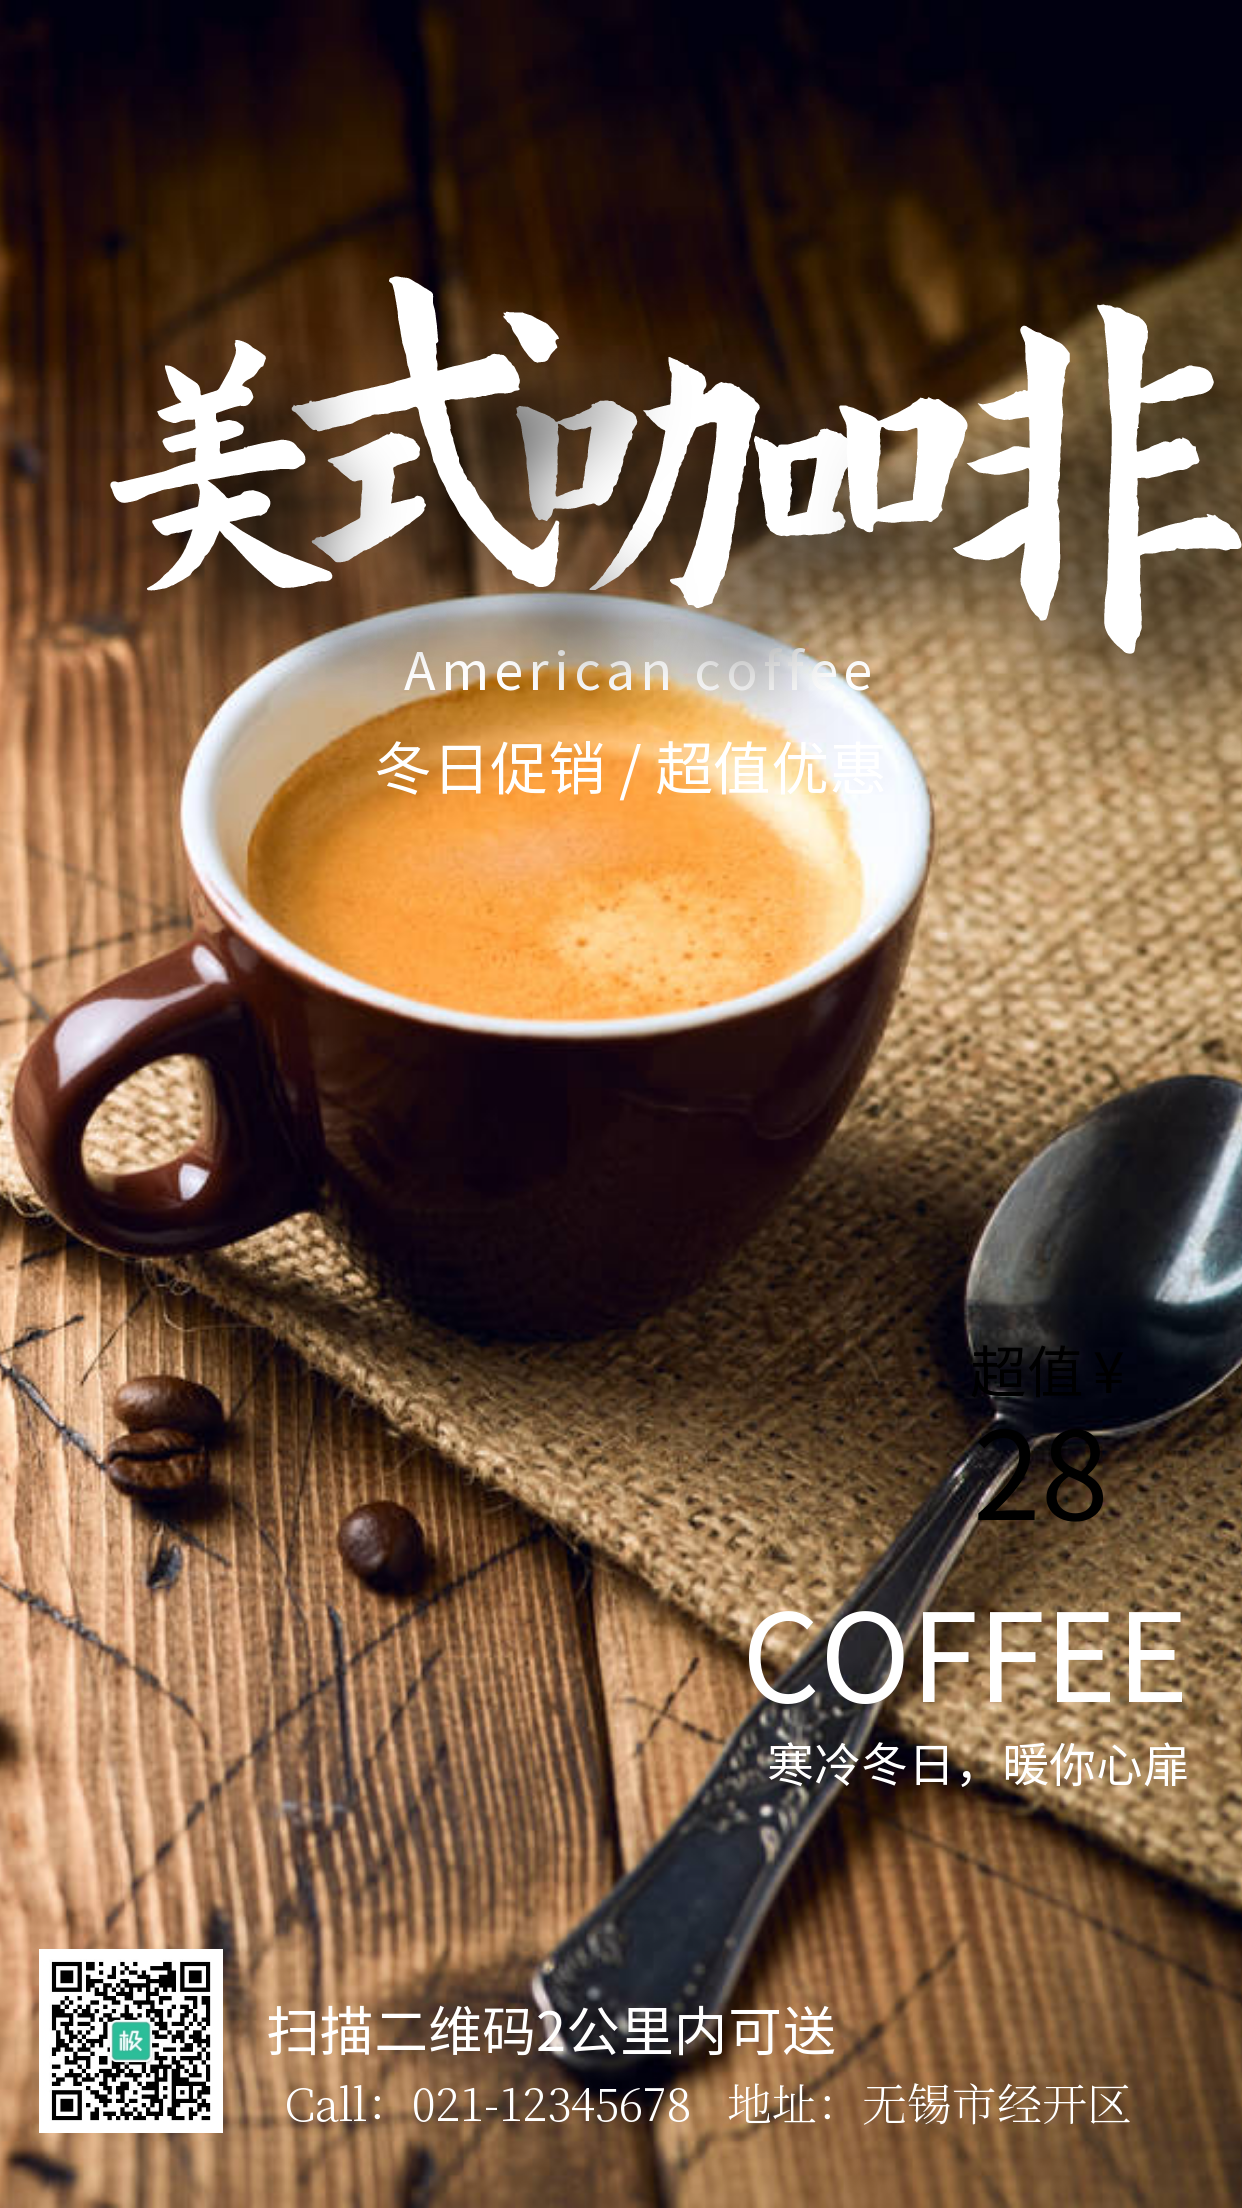 美式咖啡冬日促销摄影手机海报